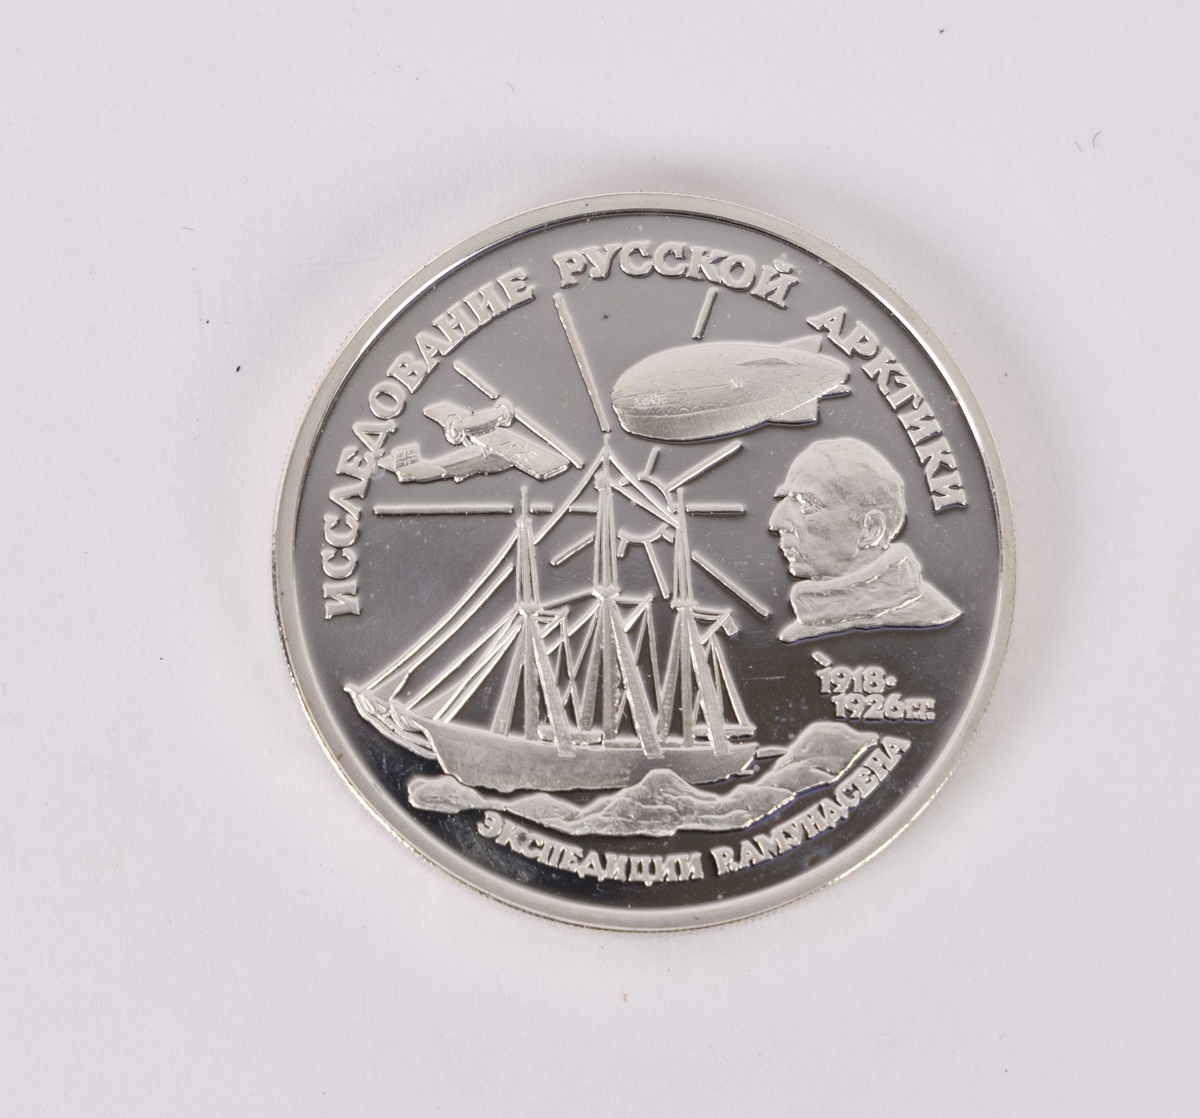 Myntens motiv forside viser Roald Amundsen og fremkomstmidler han brukte under polarforsking i Arktis. Bakside er en to-hodet ørn. 